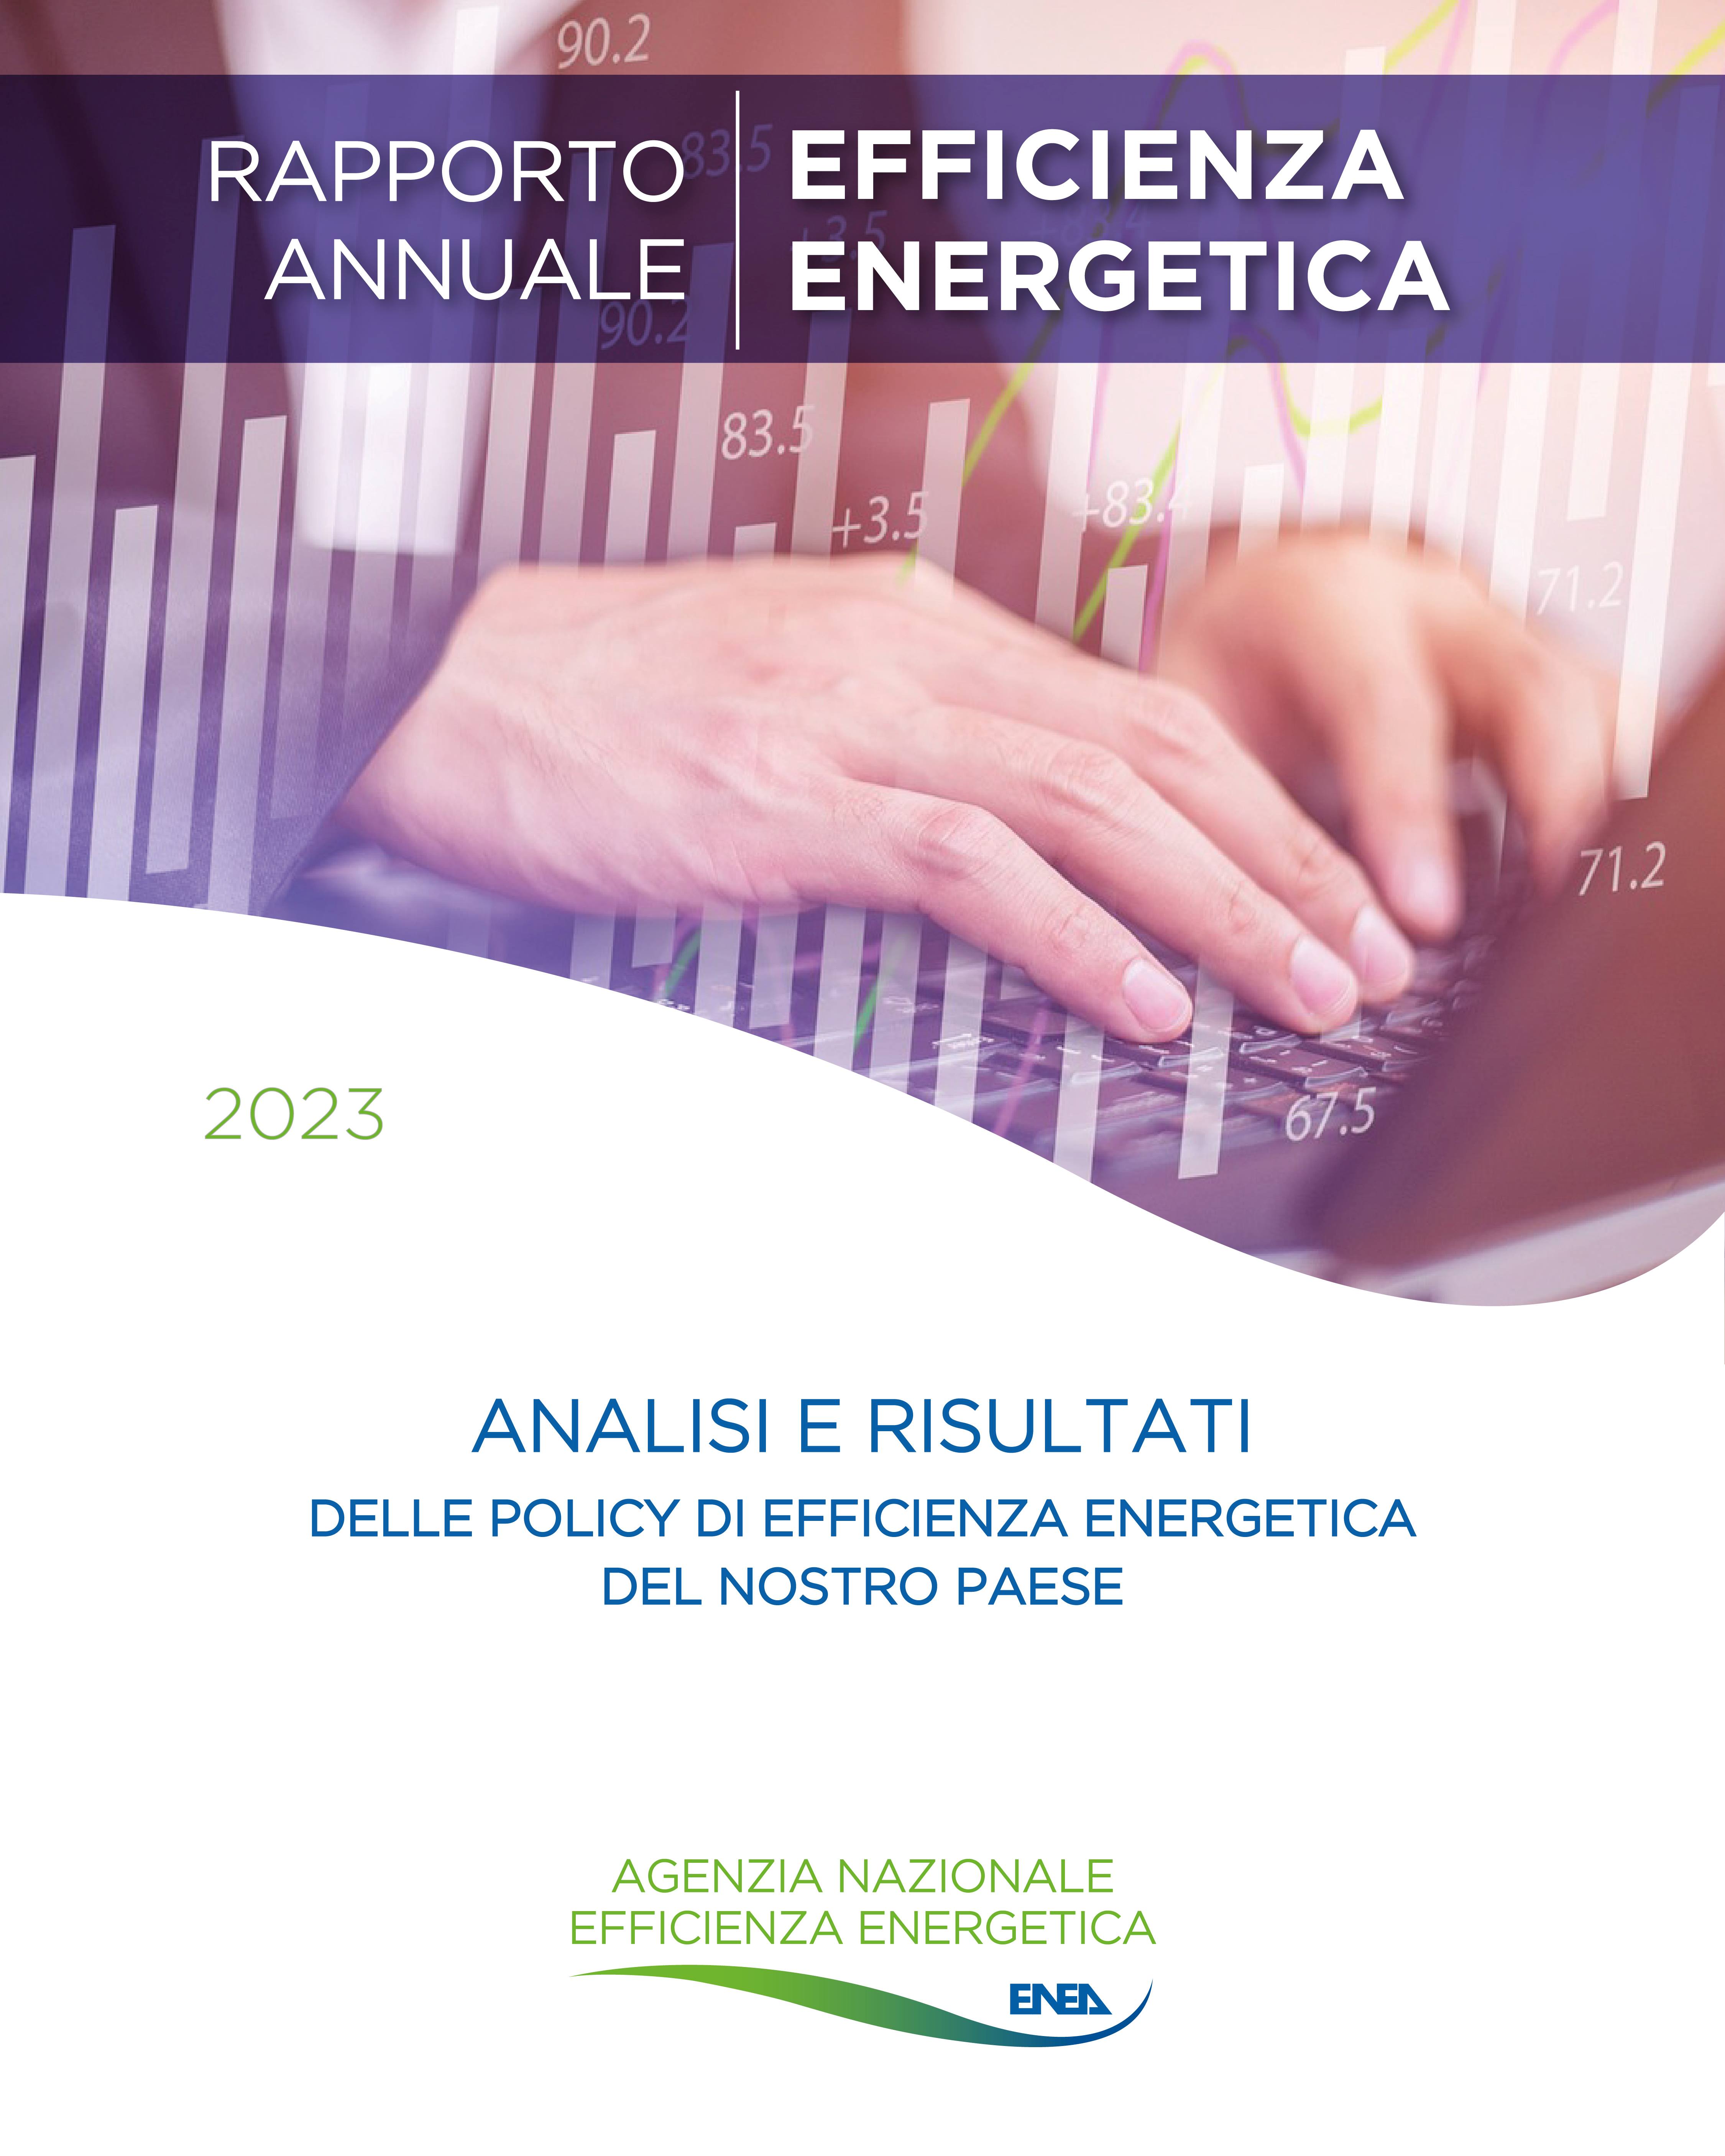 La copertina del Rapporto Annuale sull'Efficienza Energetica 2023 con al centro la scritta 